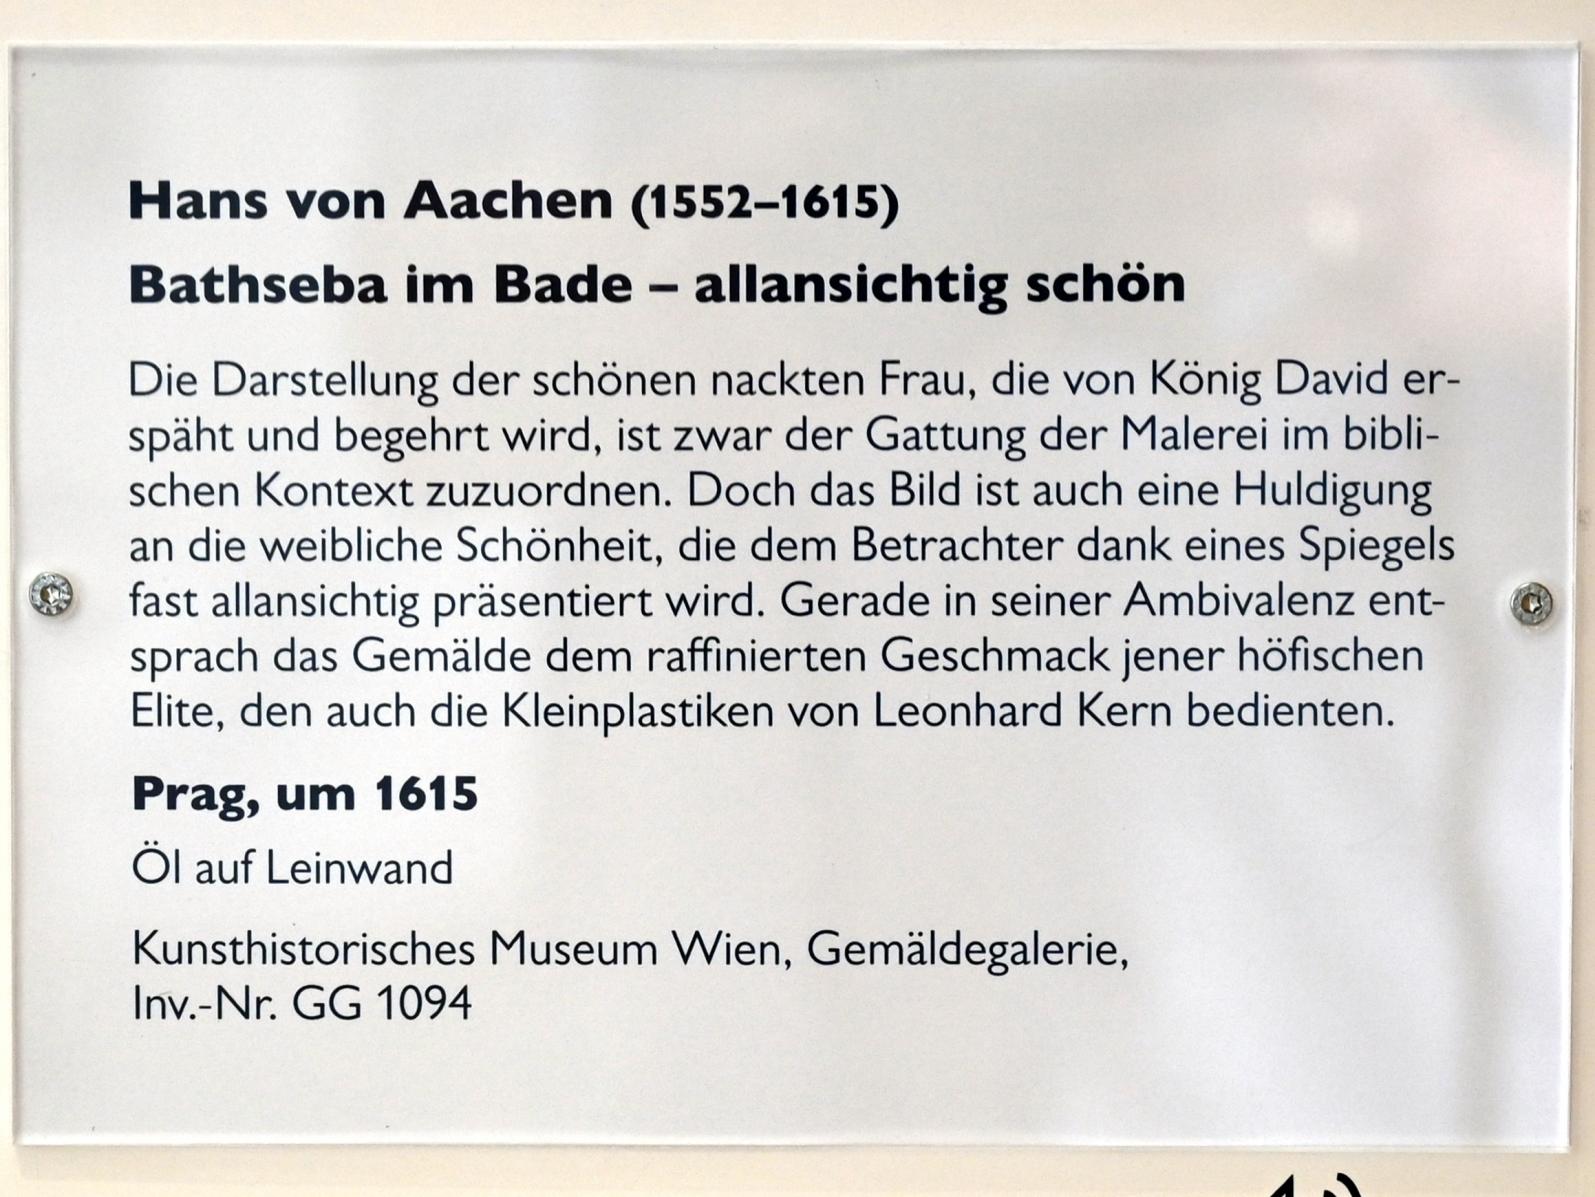 Hans von Aachen (1574–1615), Bathseba im Bade - allansichtig schön, Schwäbisch Hall, Kunsthalle Würth, Ausstellung "Leonhard Kern und Europa" vom 29.03. - 03.10.2021, Untergeschoß Saal 5, um 1615, Bild 2/2